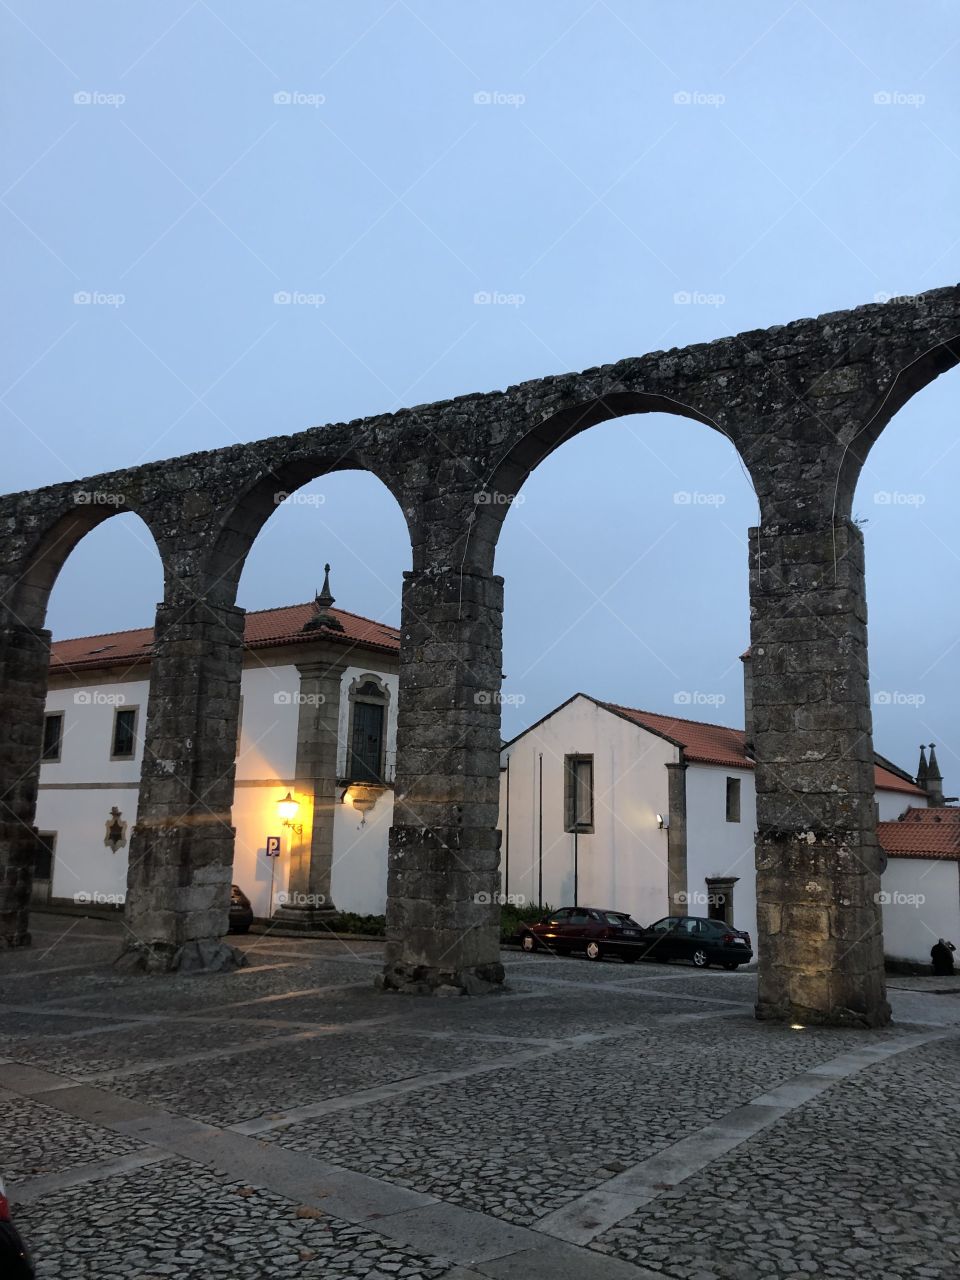 Acueducto de Braga portugal